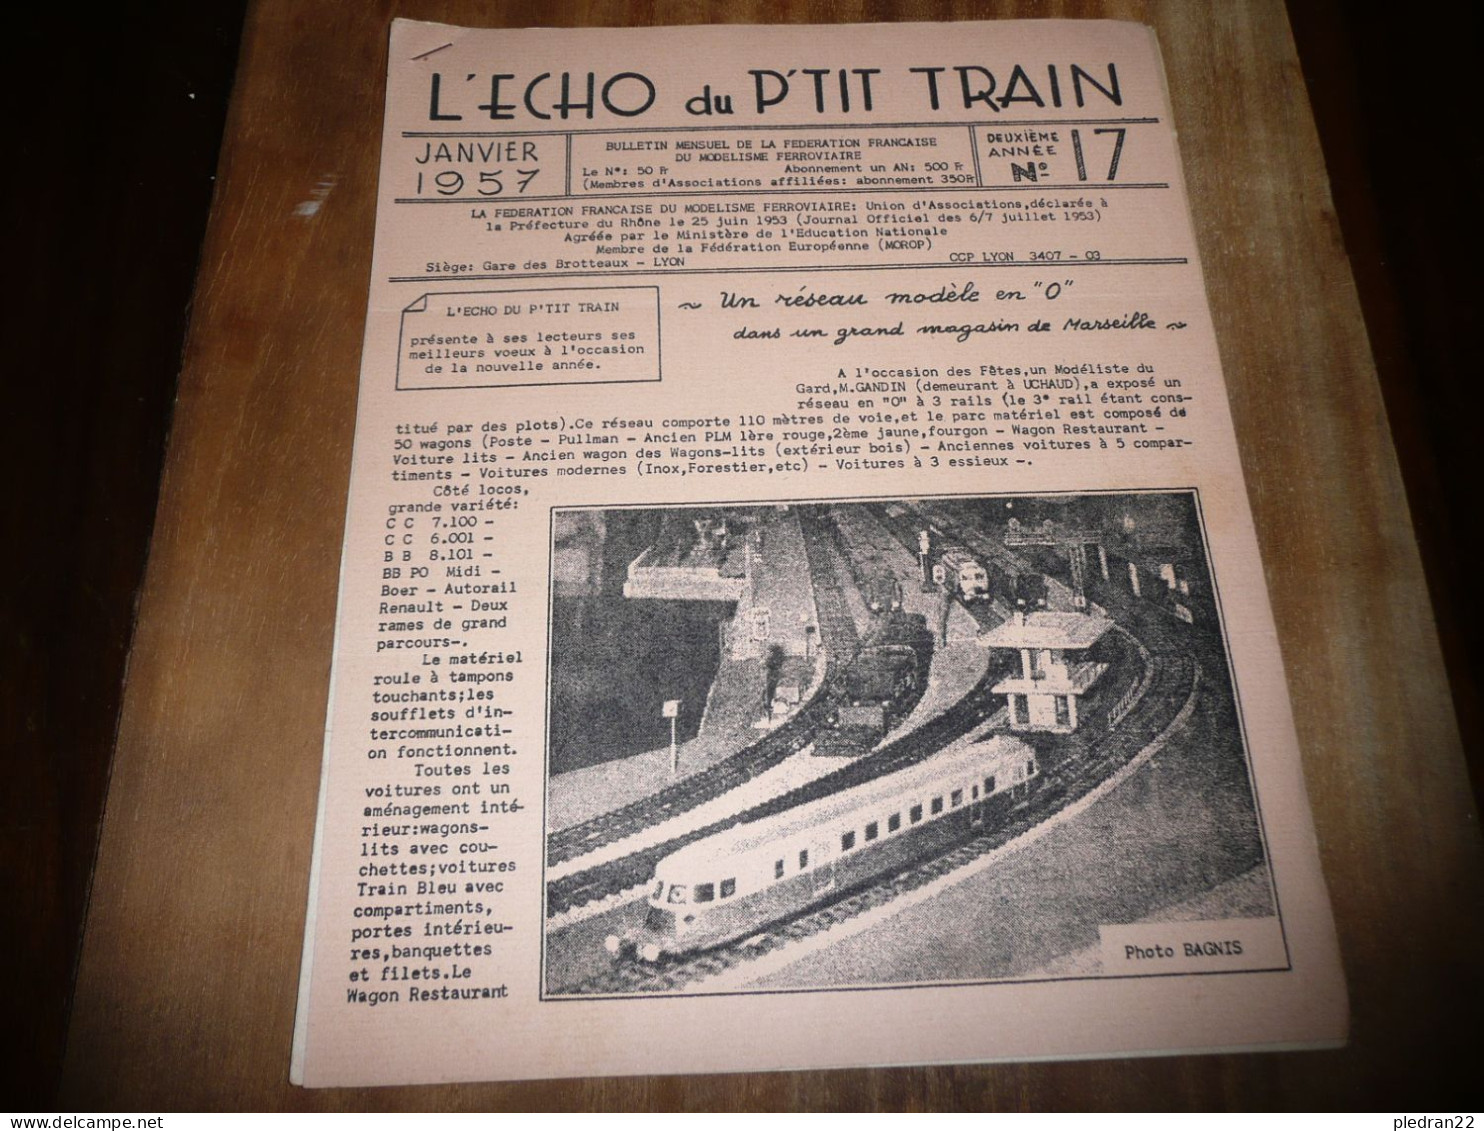 CHEMINS DE FER REVUE L'ECHO DU P'TIT TRAIN N° 17 JANVIER 1957 MODELISME FERROVIAIRE GARE DES BROTTEAUX LYON - Ferrovie & Tranvie